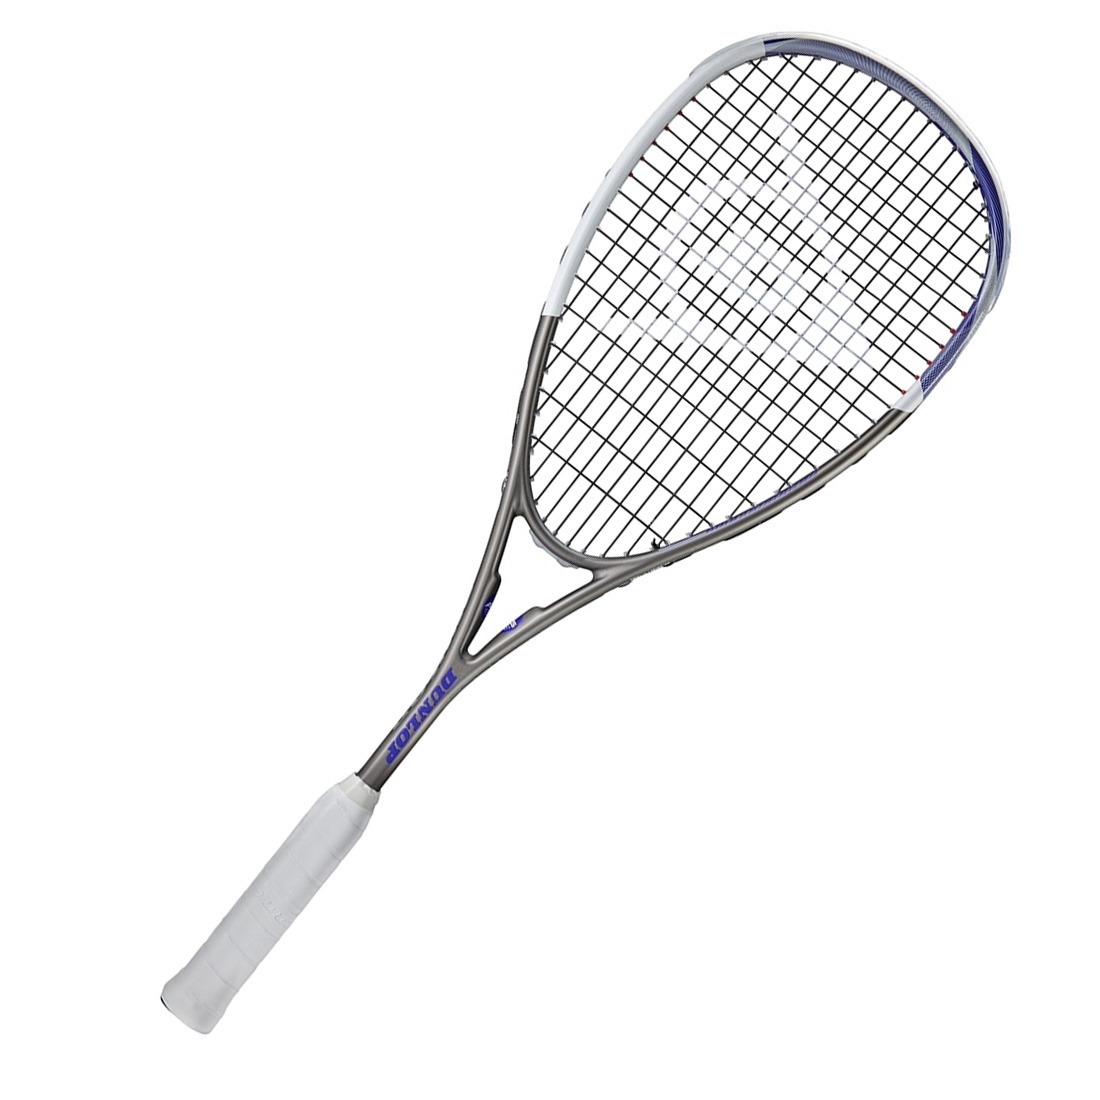 DUNLOP Tempo Pro 4.0 Squash Racquet